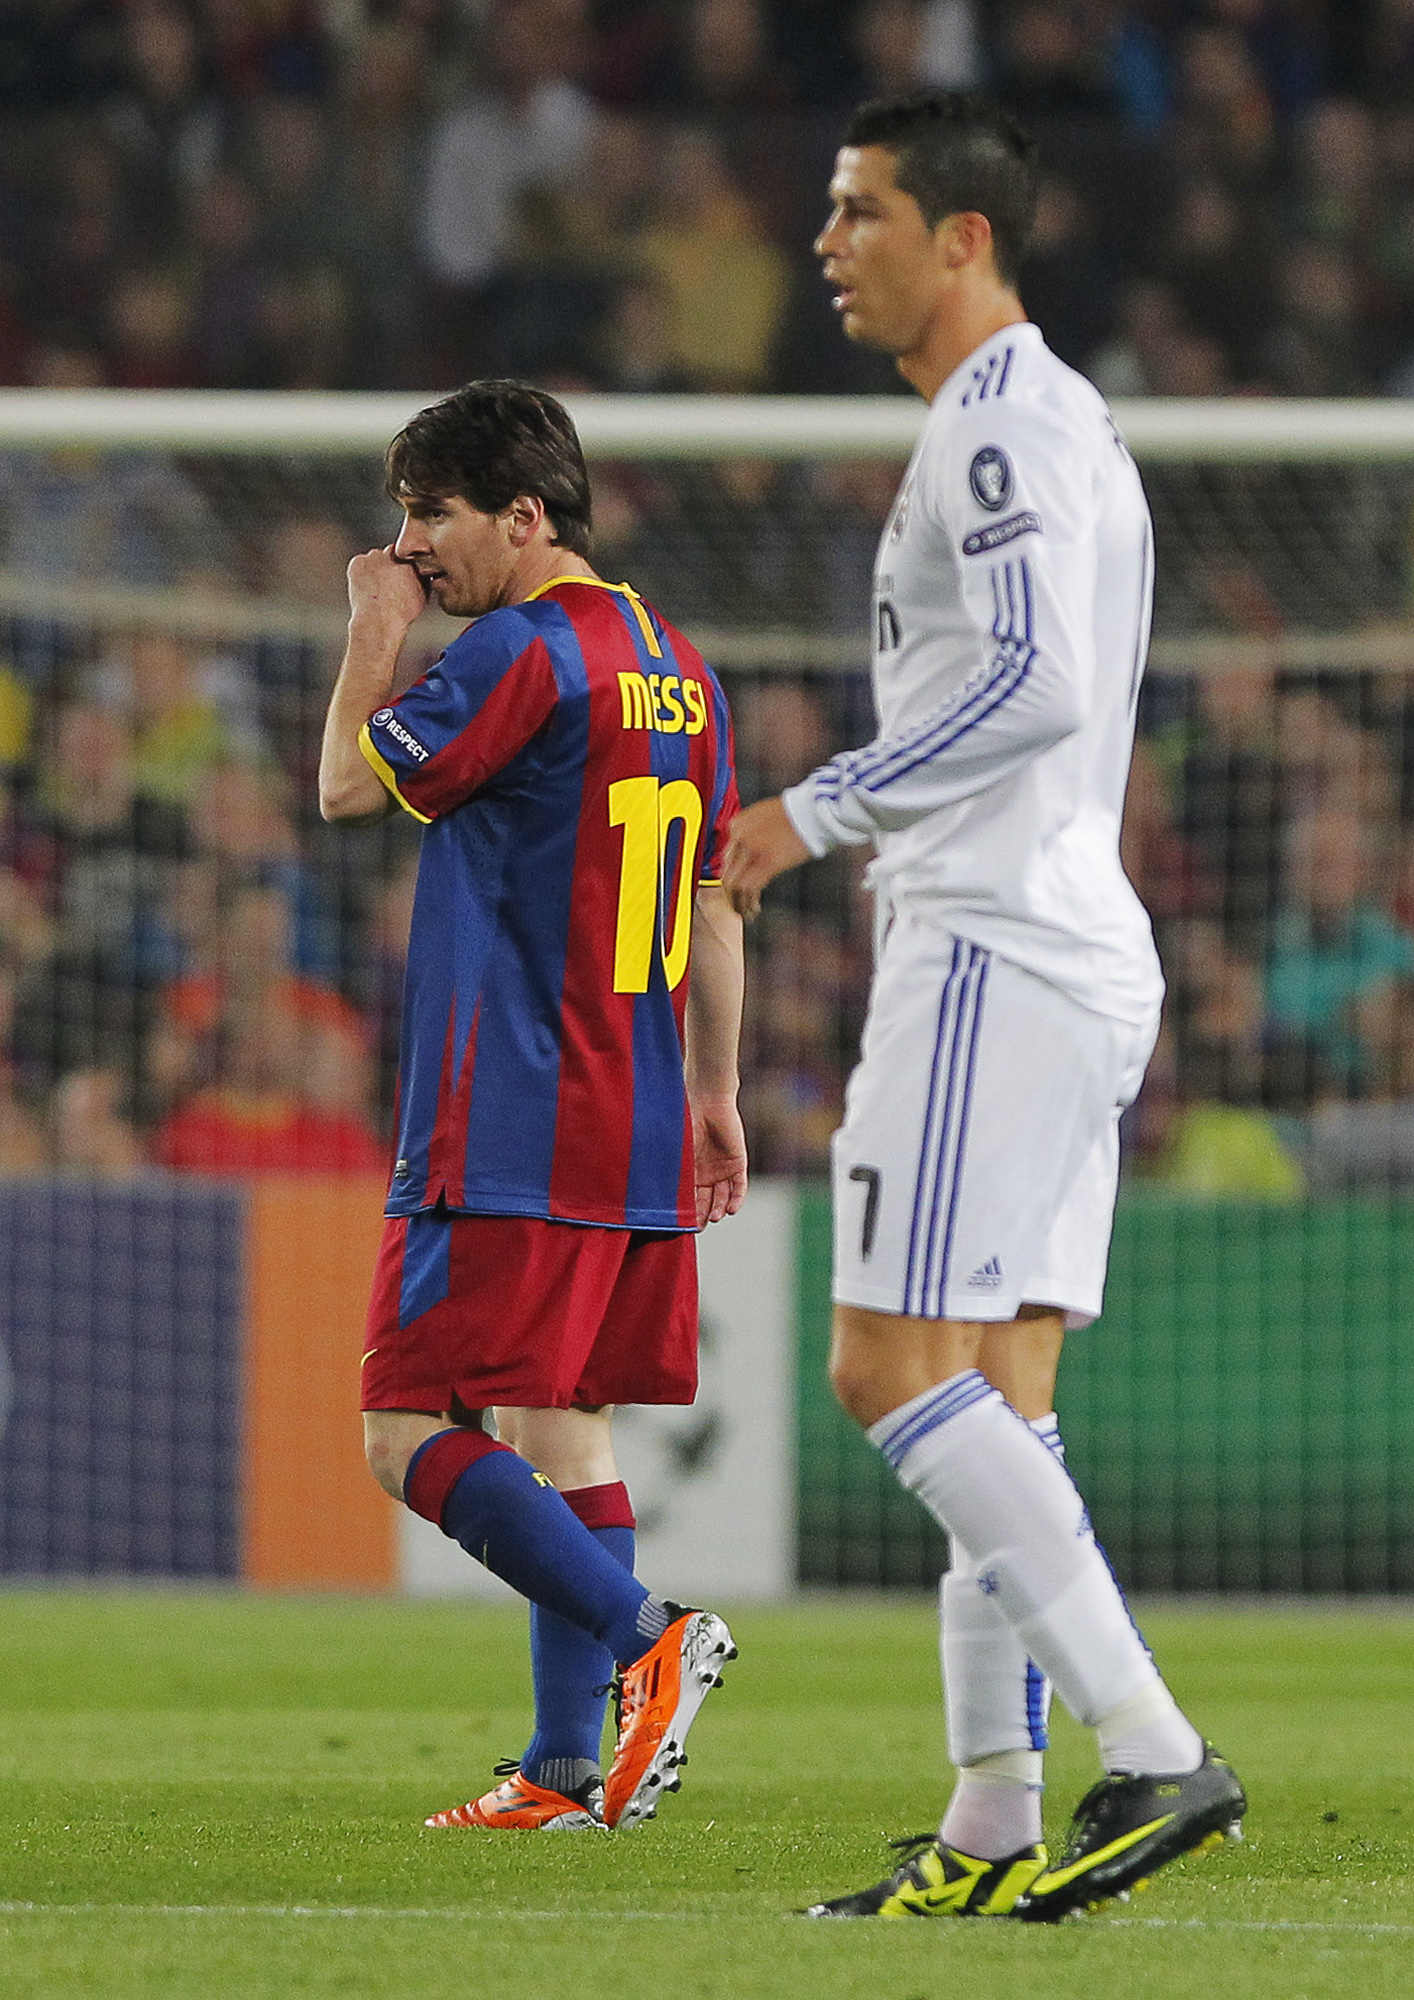 Ronaldo och Messi. De fick avgöra en match vardera. Men det var Barcelona som tog hem den finaste segern. 